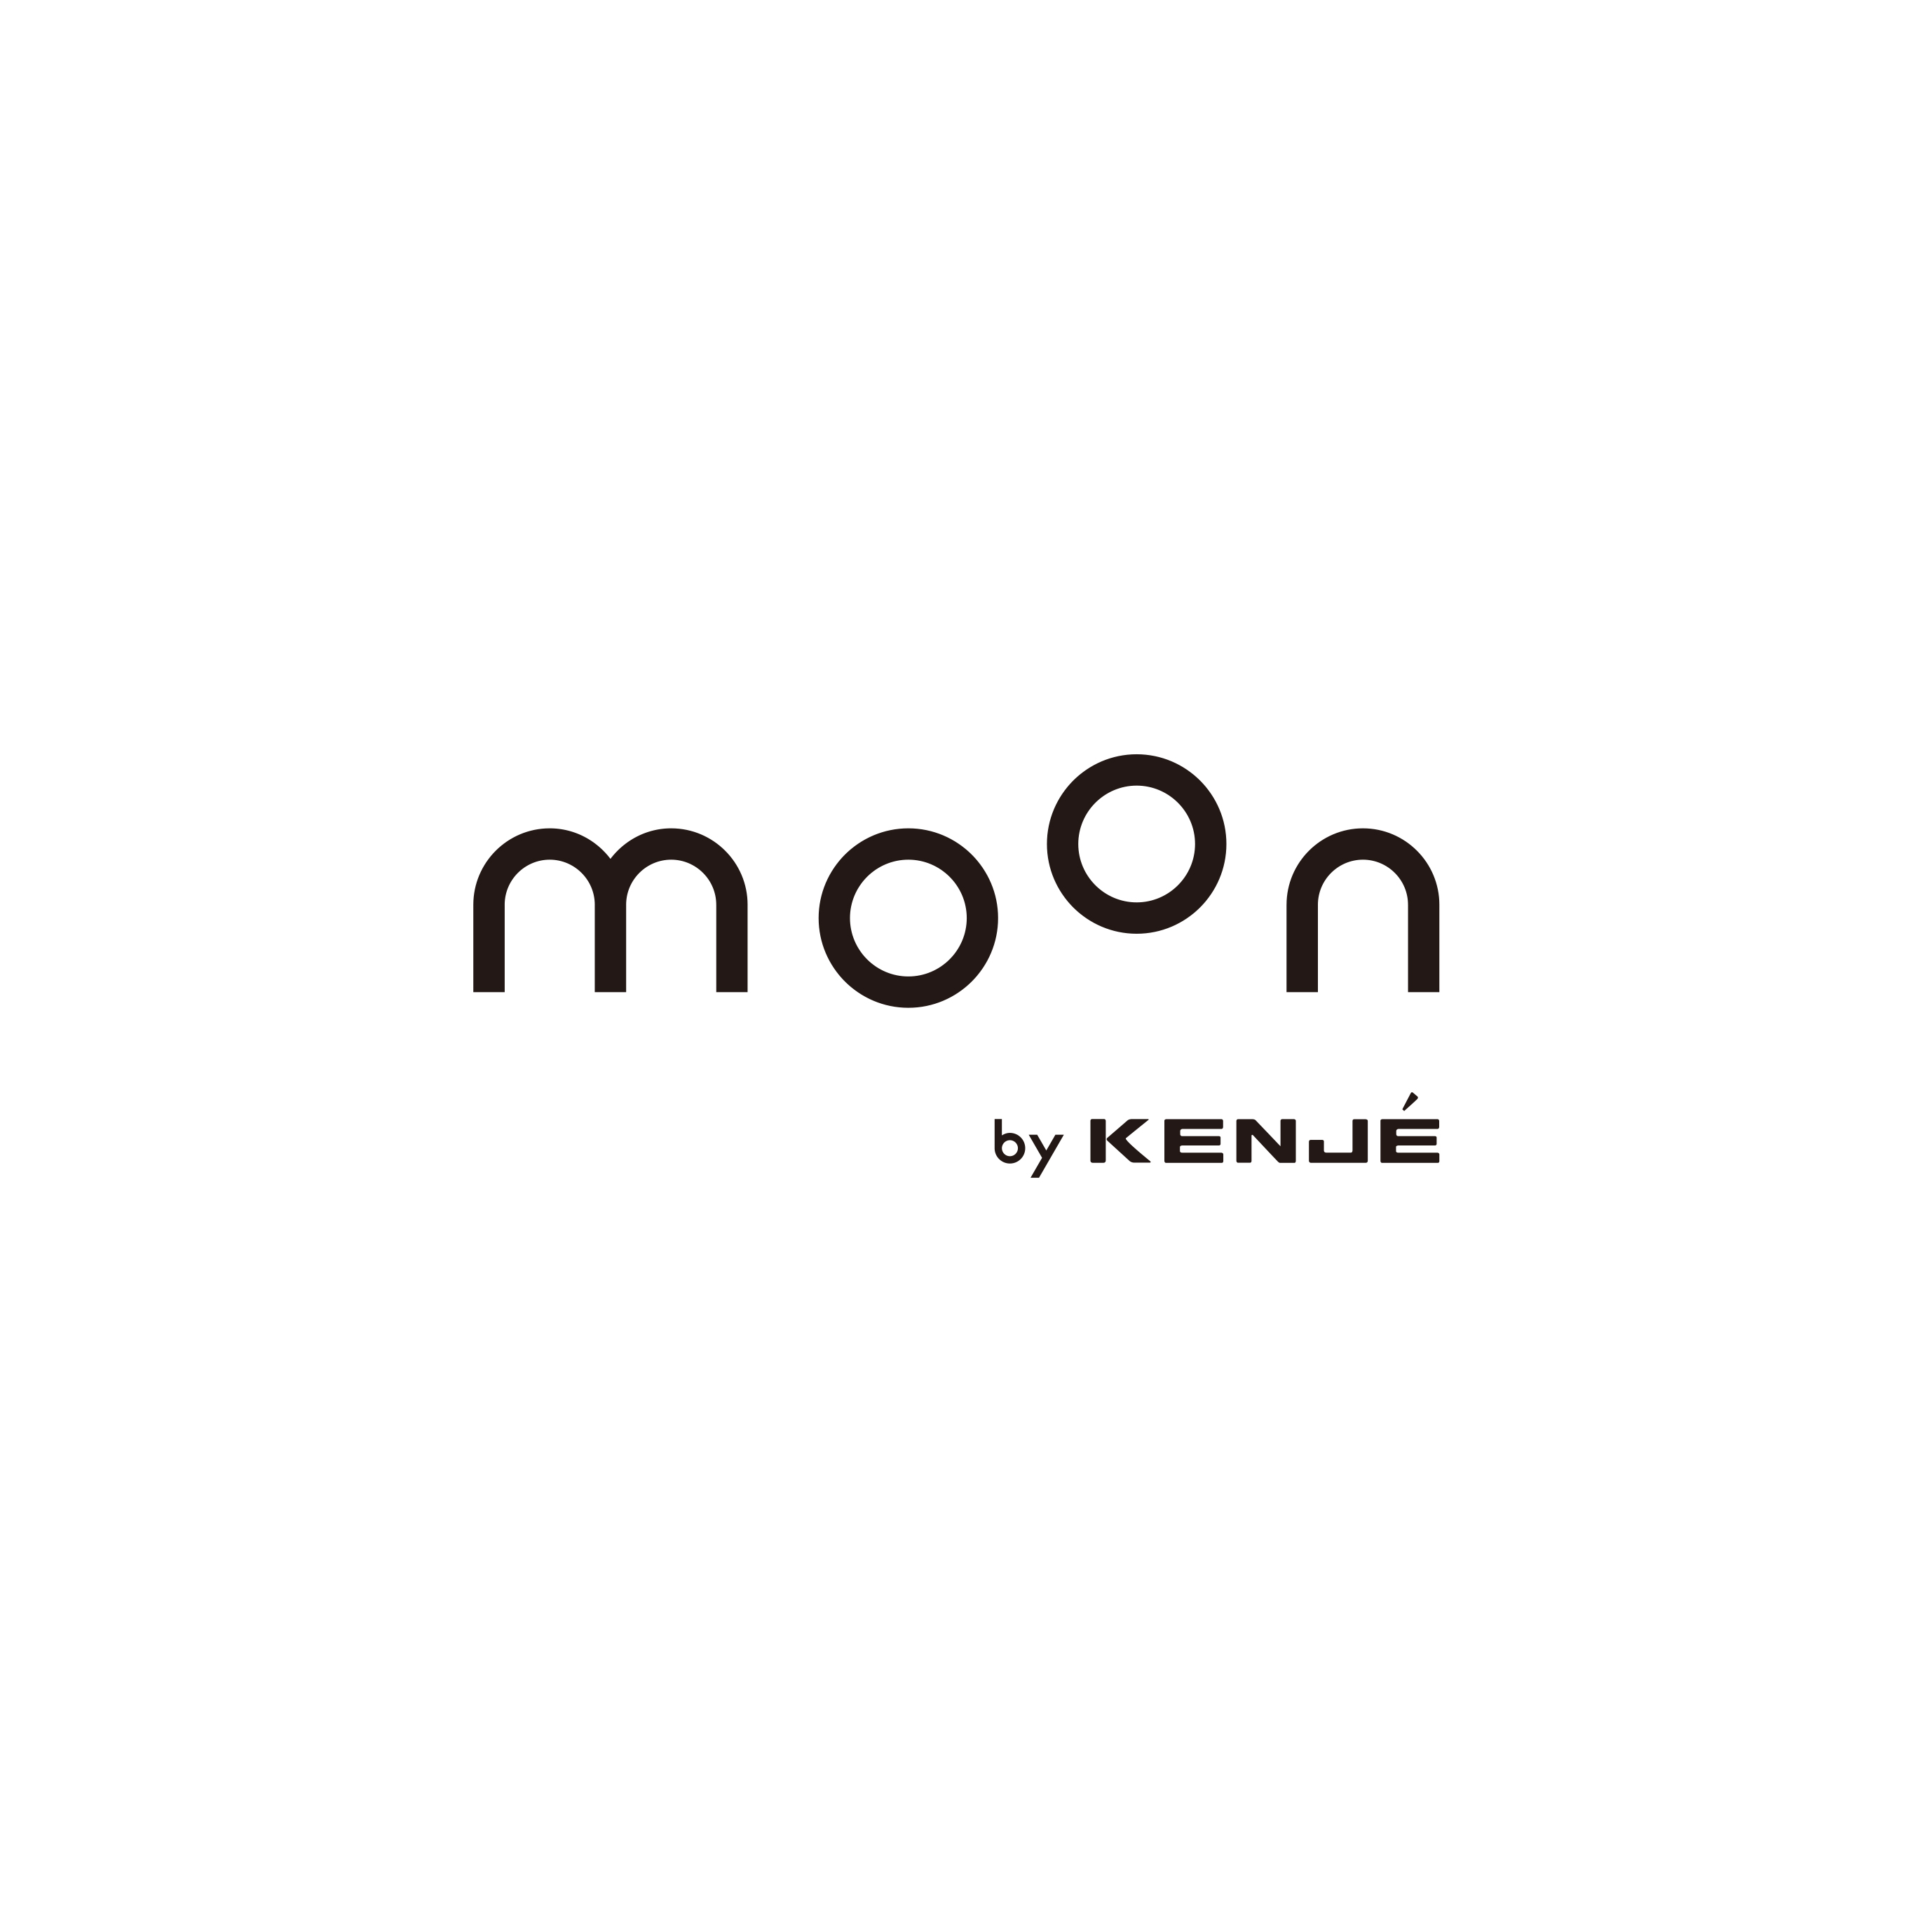 moon by KENJE